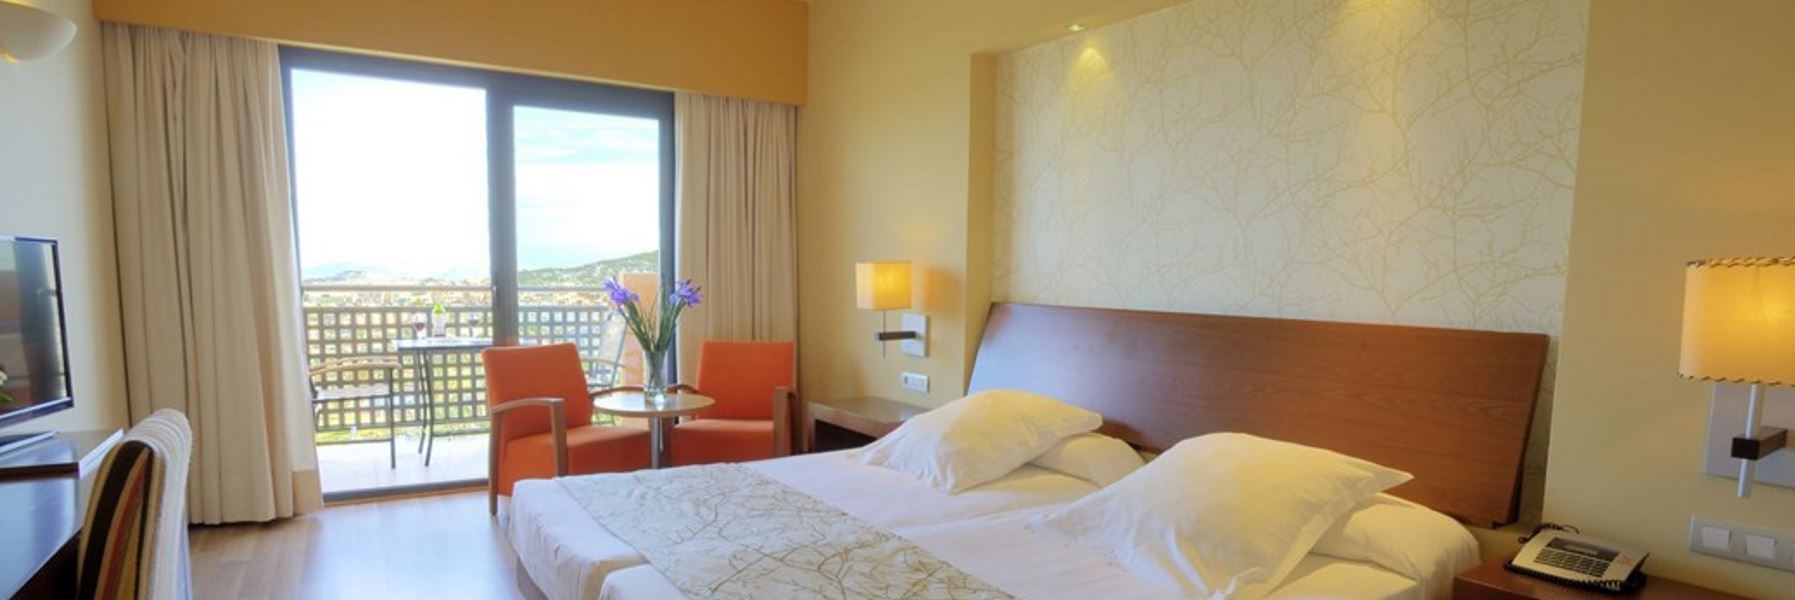 Vacaciones baratas con el Hotel Valle del Este en Almería